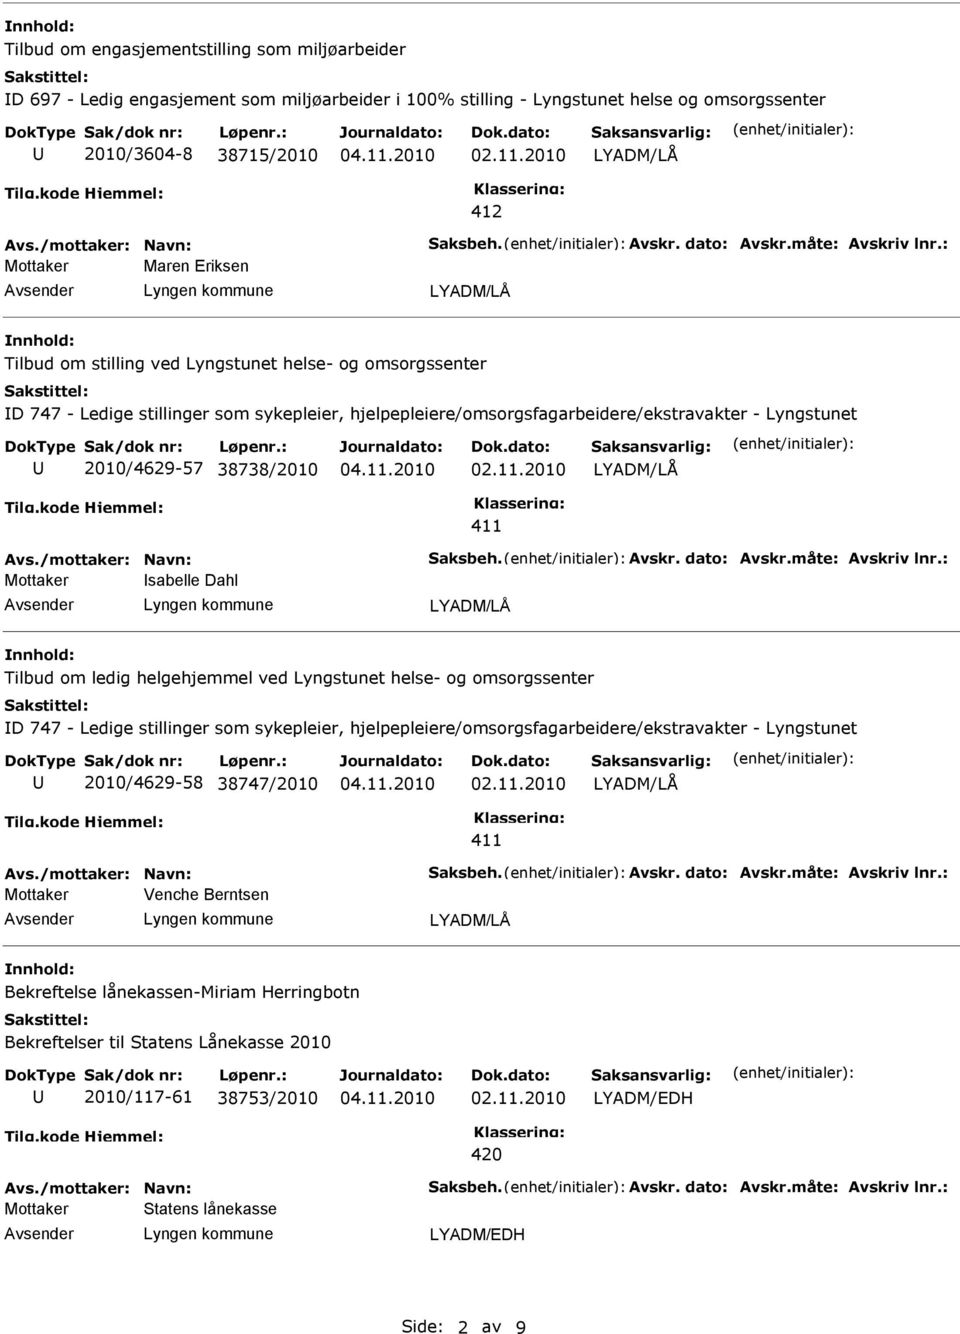 : Mottaker Maren Eriksen Tilbud om stilling ved Lyngstunet helse- og omsorgssenter D 747 - Ledige stillinger som sykepleier, hjelpepleiere/omsorgsfagarbeidere/ekstravakter - Lyngstunet 2010/4629-57